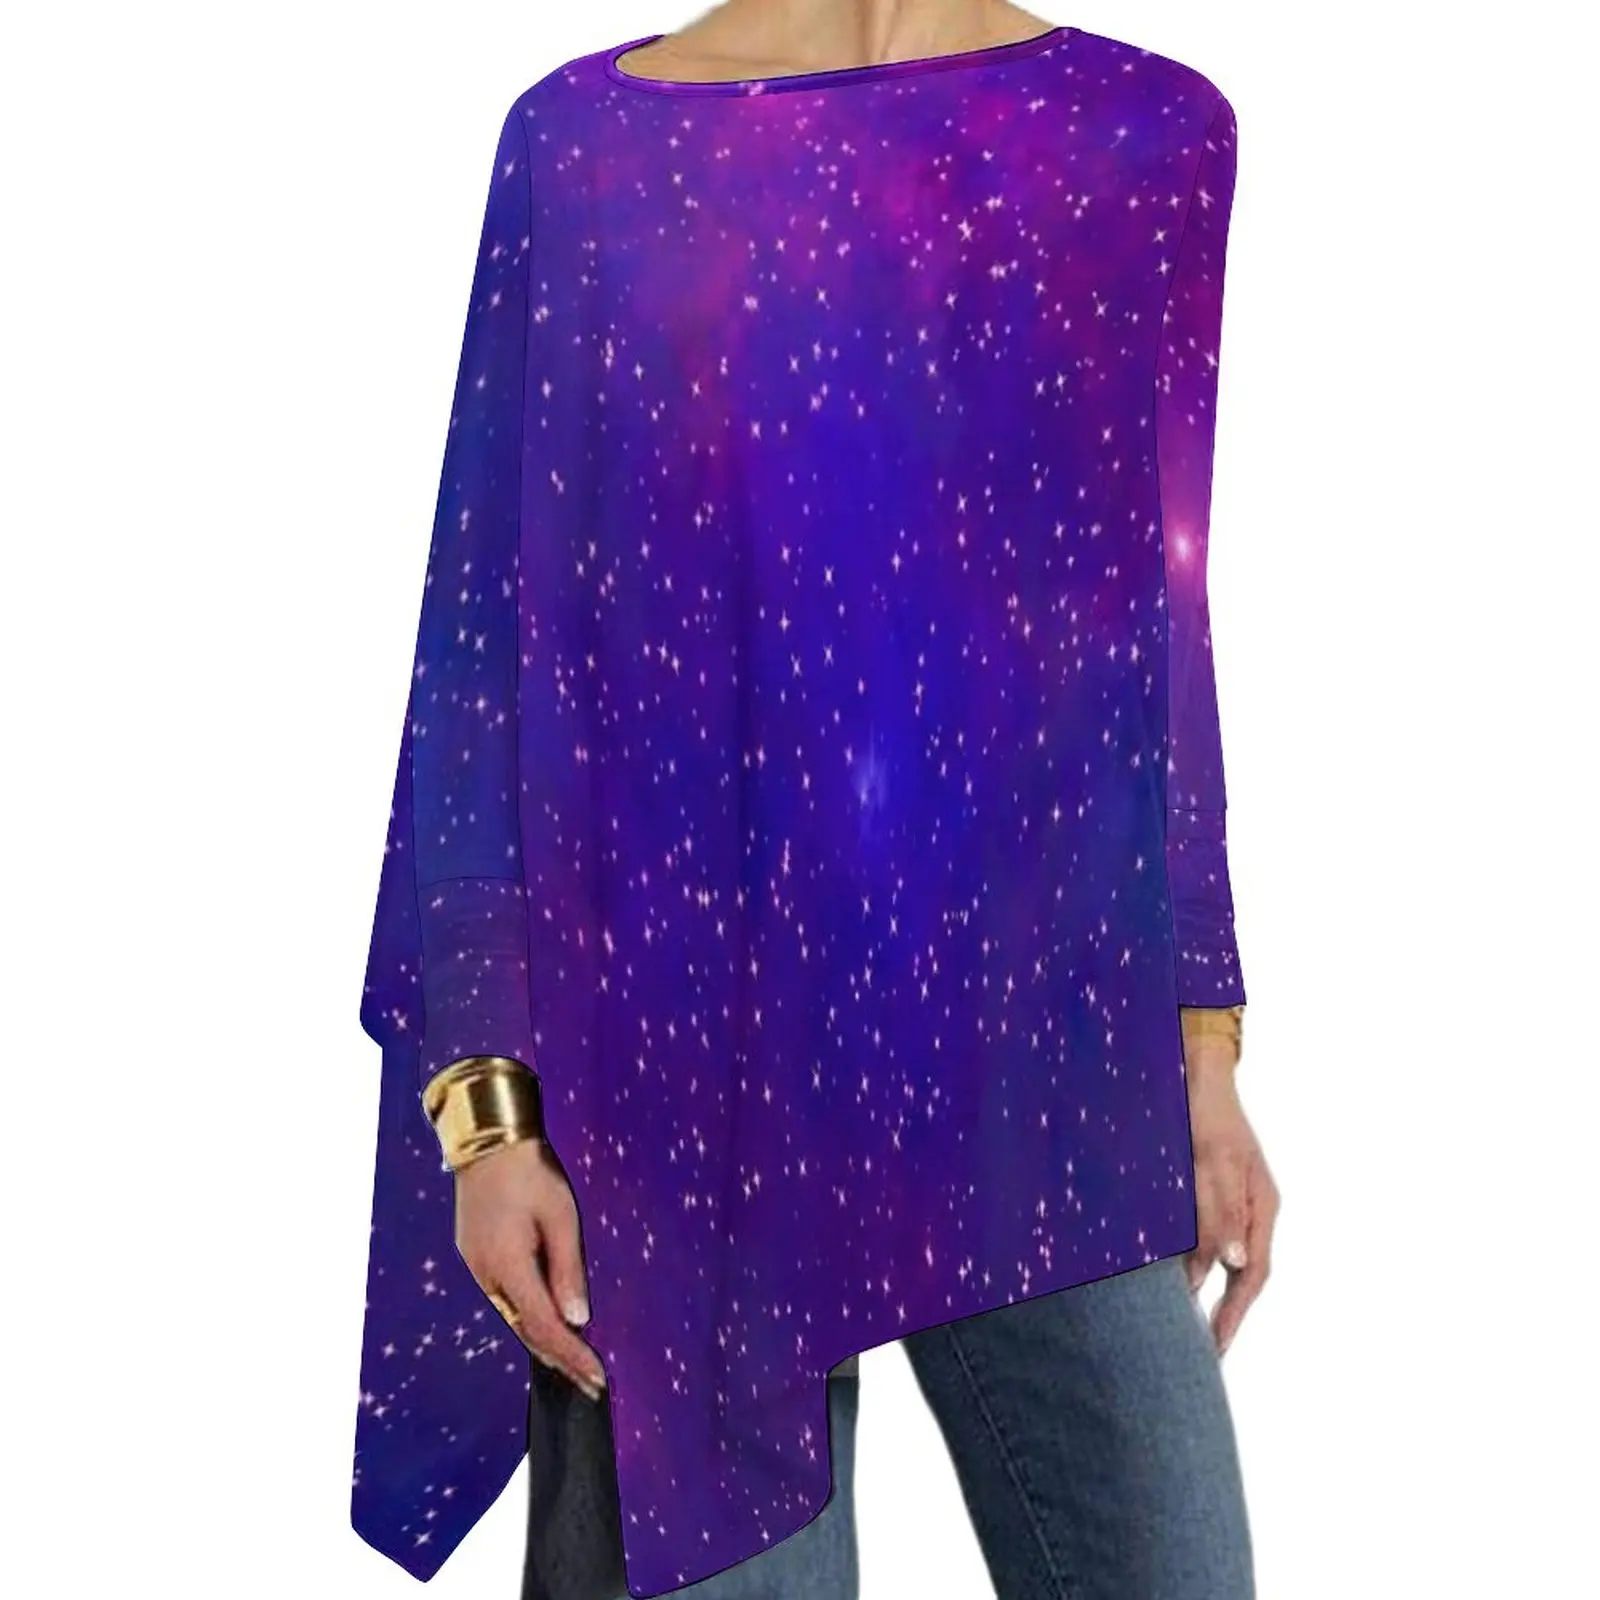 Футболка Serenity Galaxy с космическим принтом, винтажные футболки с длинным рукавом, повседневные свободные футболки оверсайз, женские топы на заказ, подарок